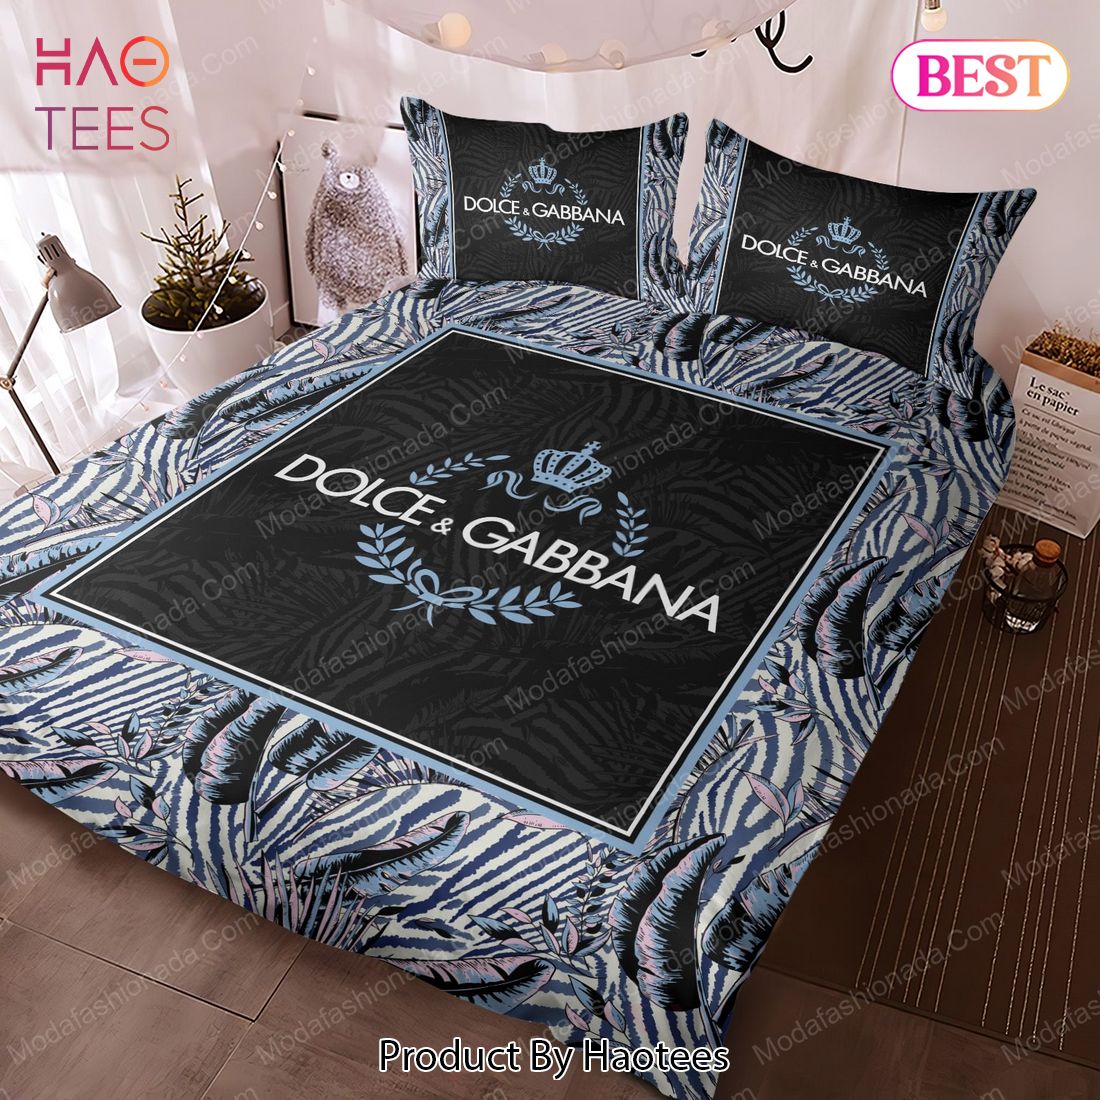 Buy Symbolism Dolce & Gabbana Logos Bedding Sets Bed Sets, Bedroom Sets, Comforter  Sets, Duvet Cover,